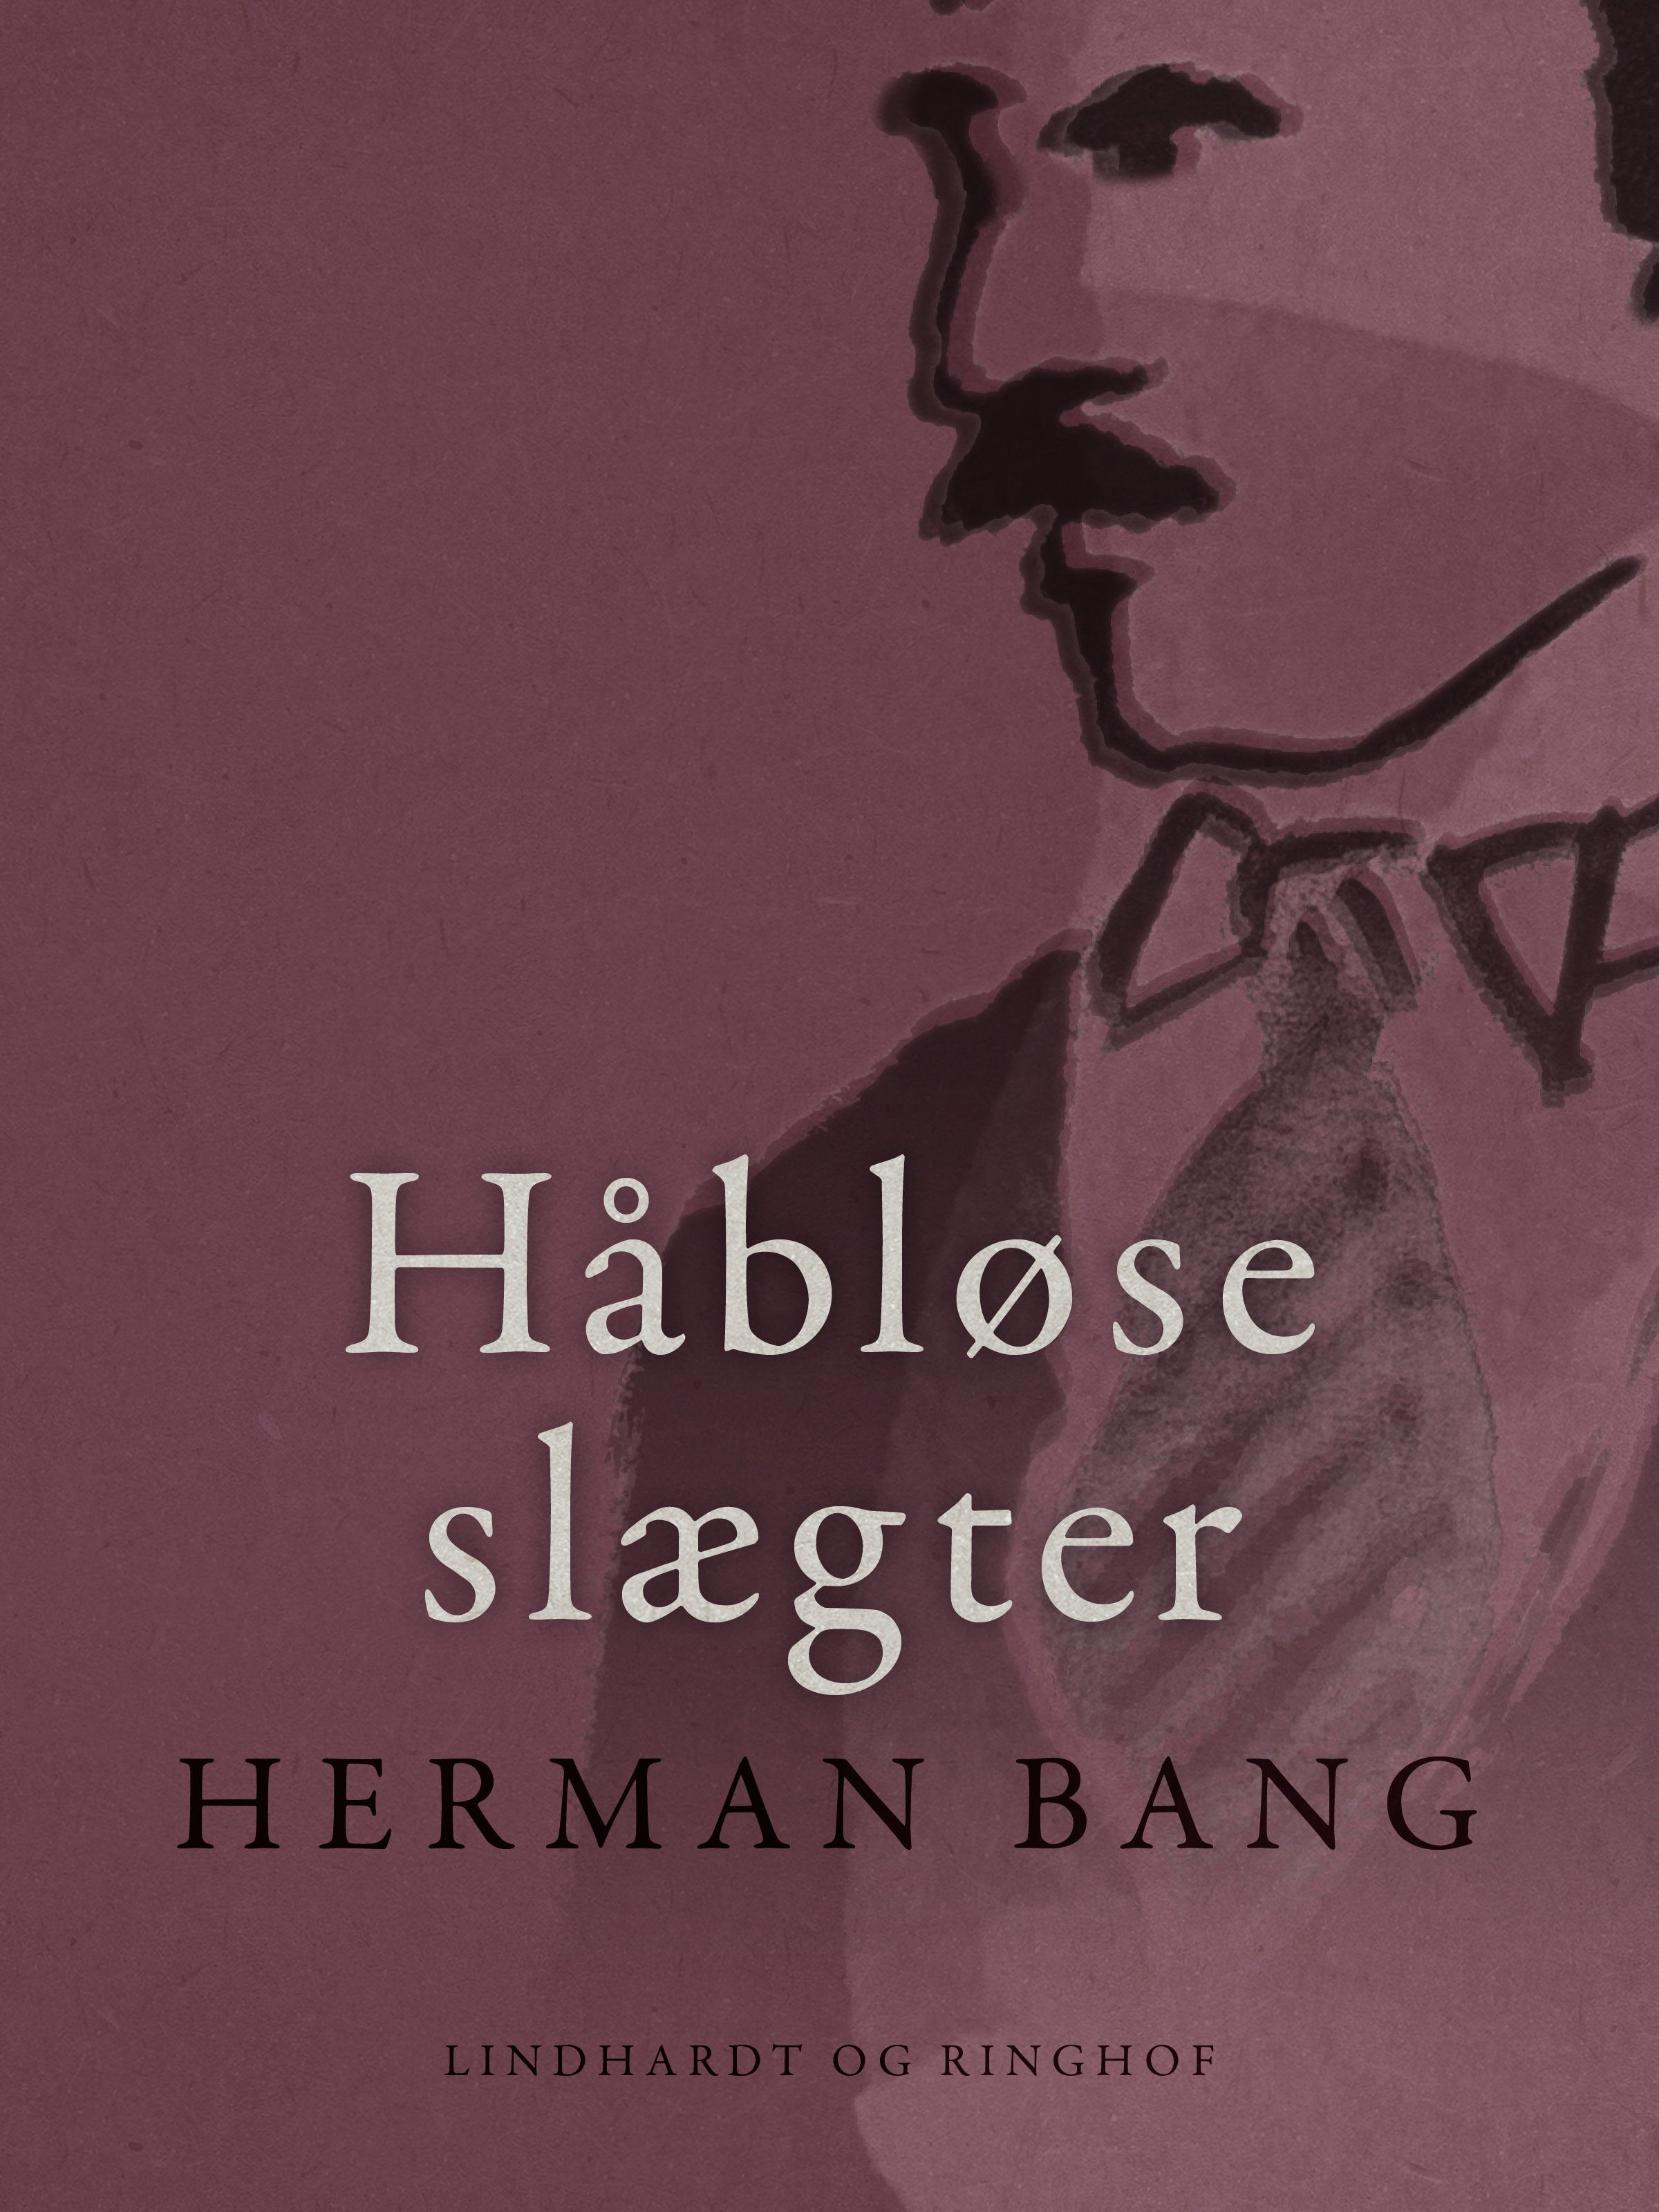 Håbløse slægter, e-bok av Herman Bang